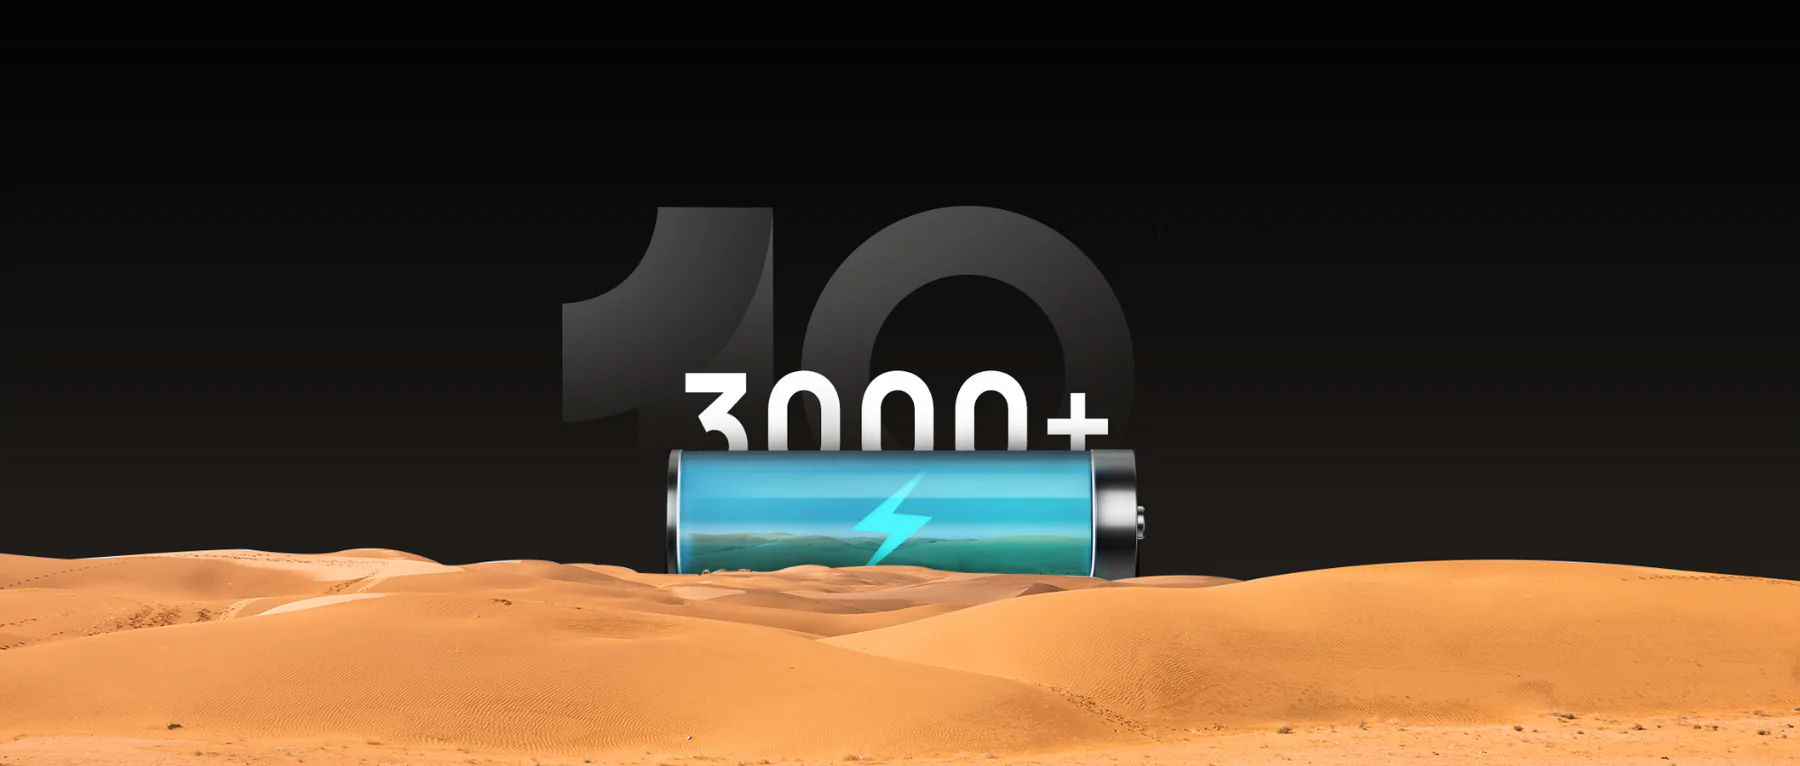 バッテリー寿命約3,000回で10年間使用できるイメージ